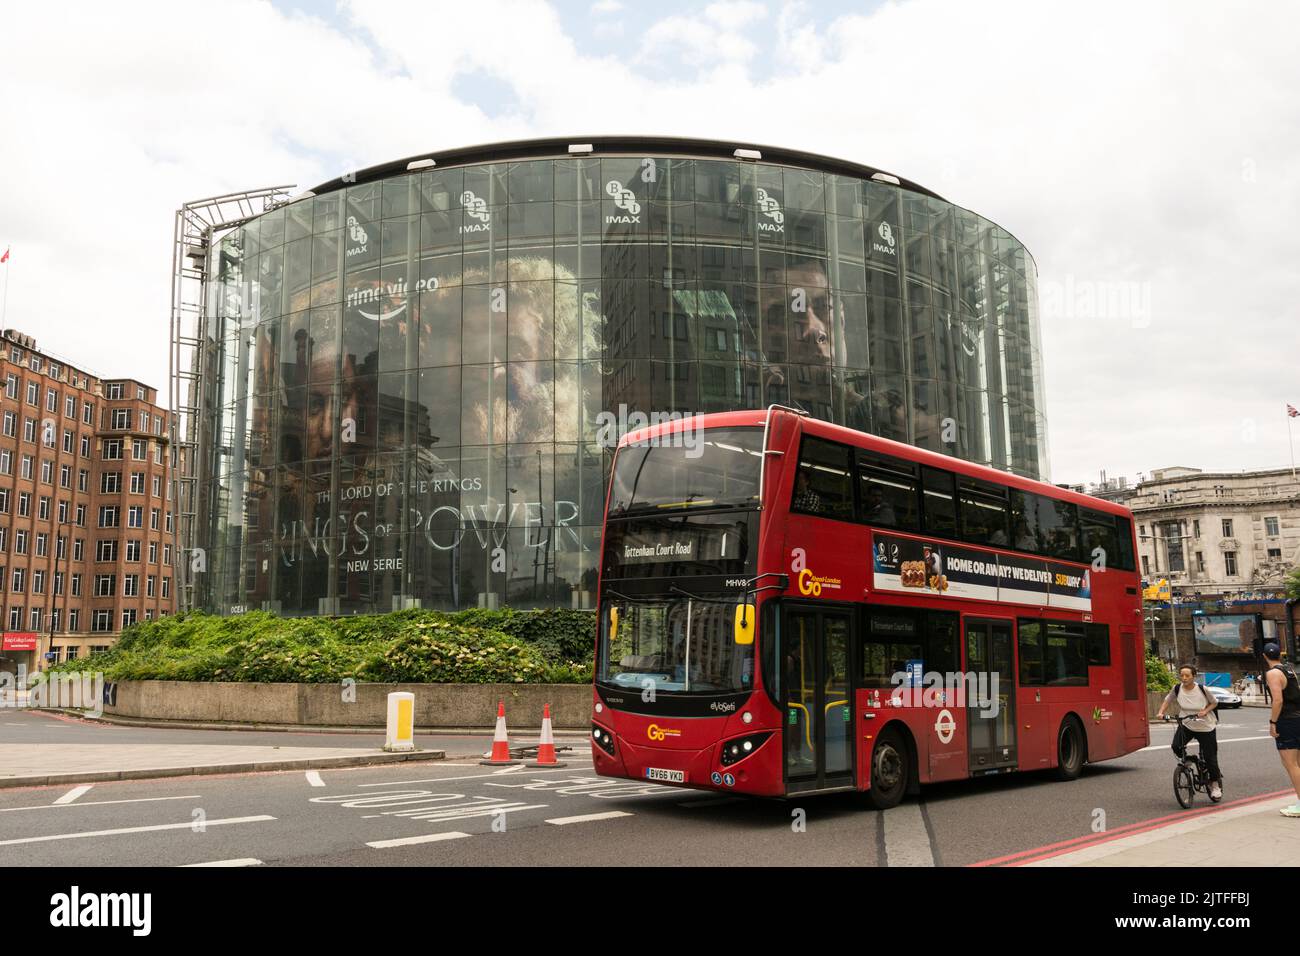 Imax Cinema on London's Southbank, Waterloo, Lambeth, London, England, UK Stock Photo